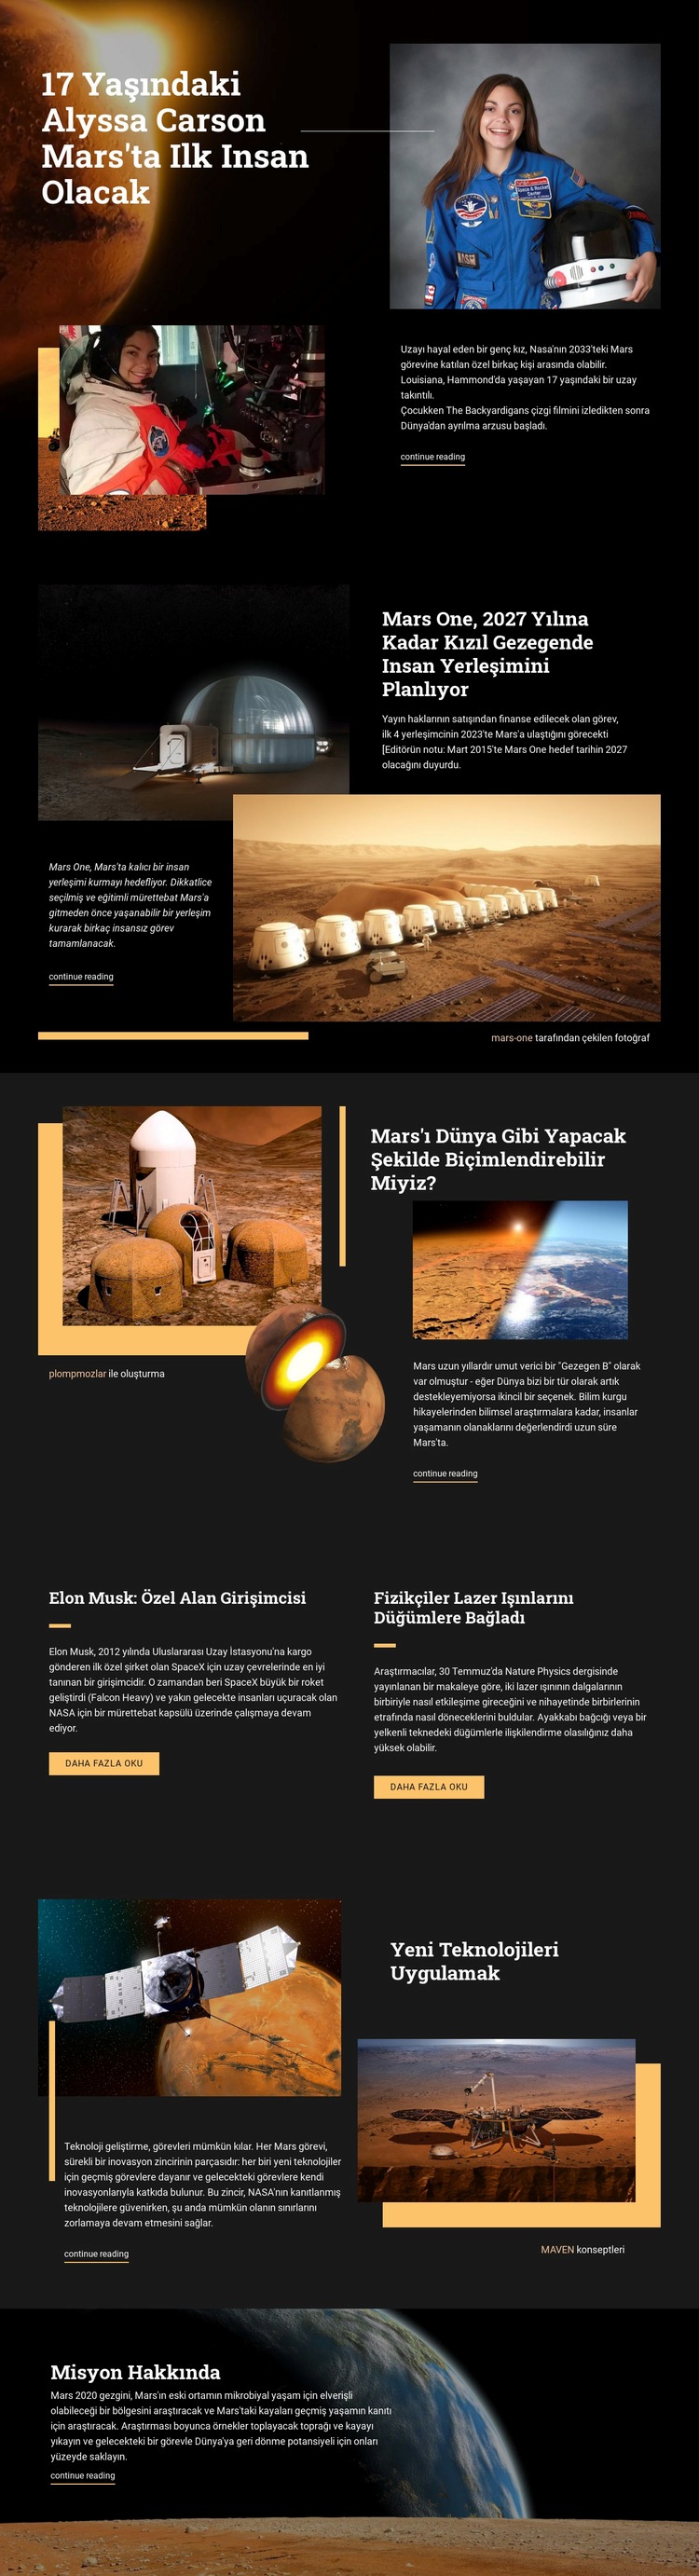 Mars'taki İlk İnsan Web sitesi tasarımı